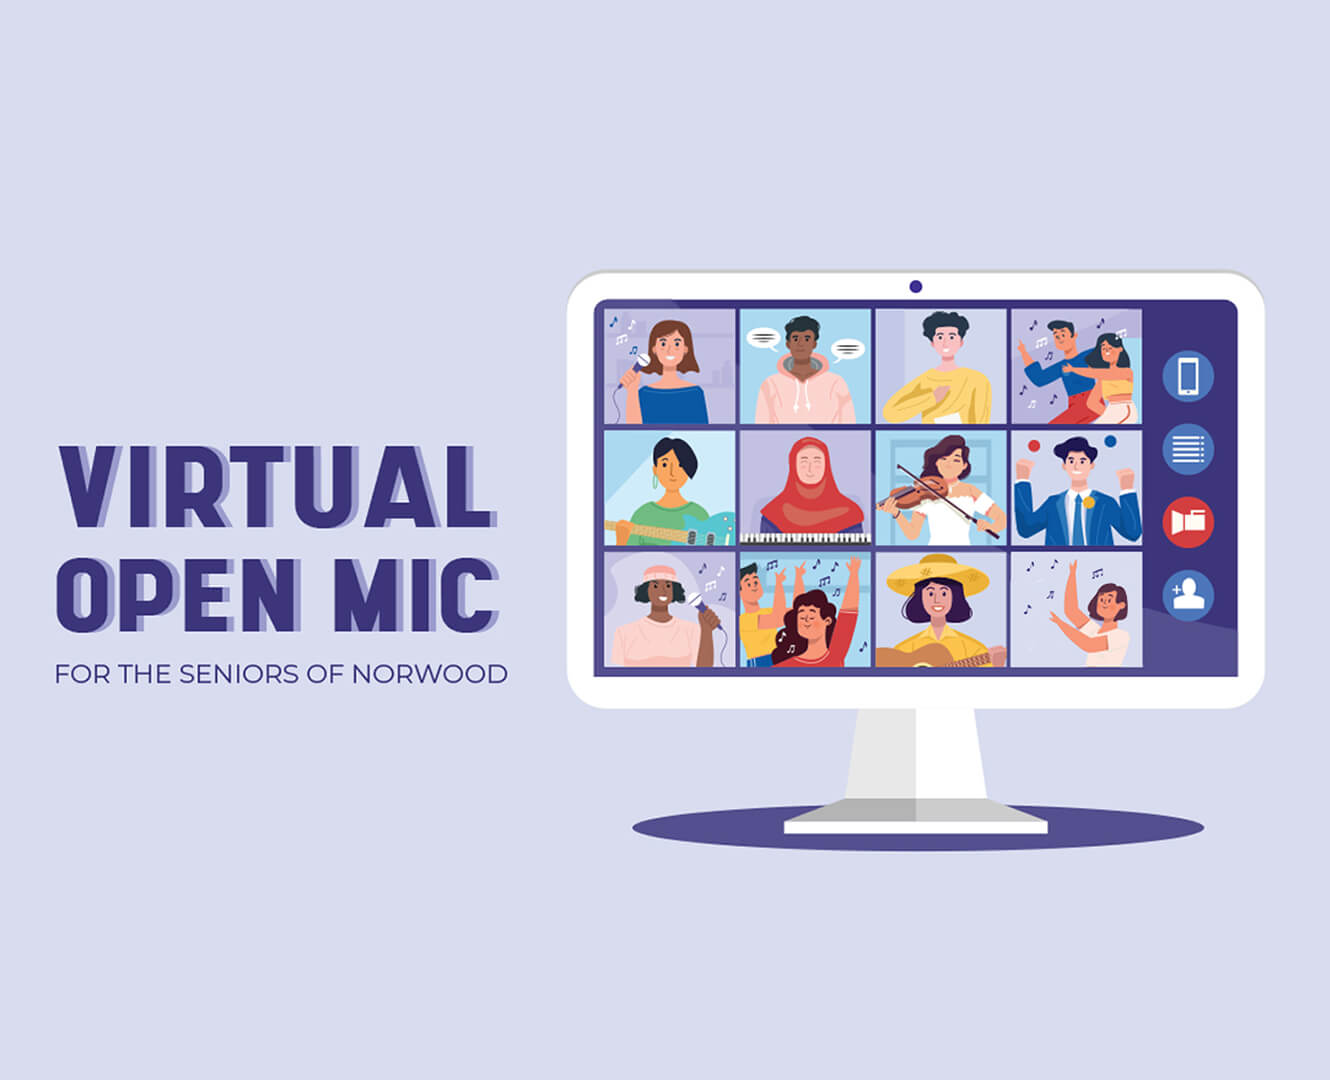 Virtual open mic night